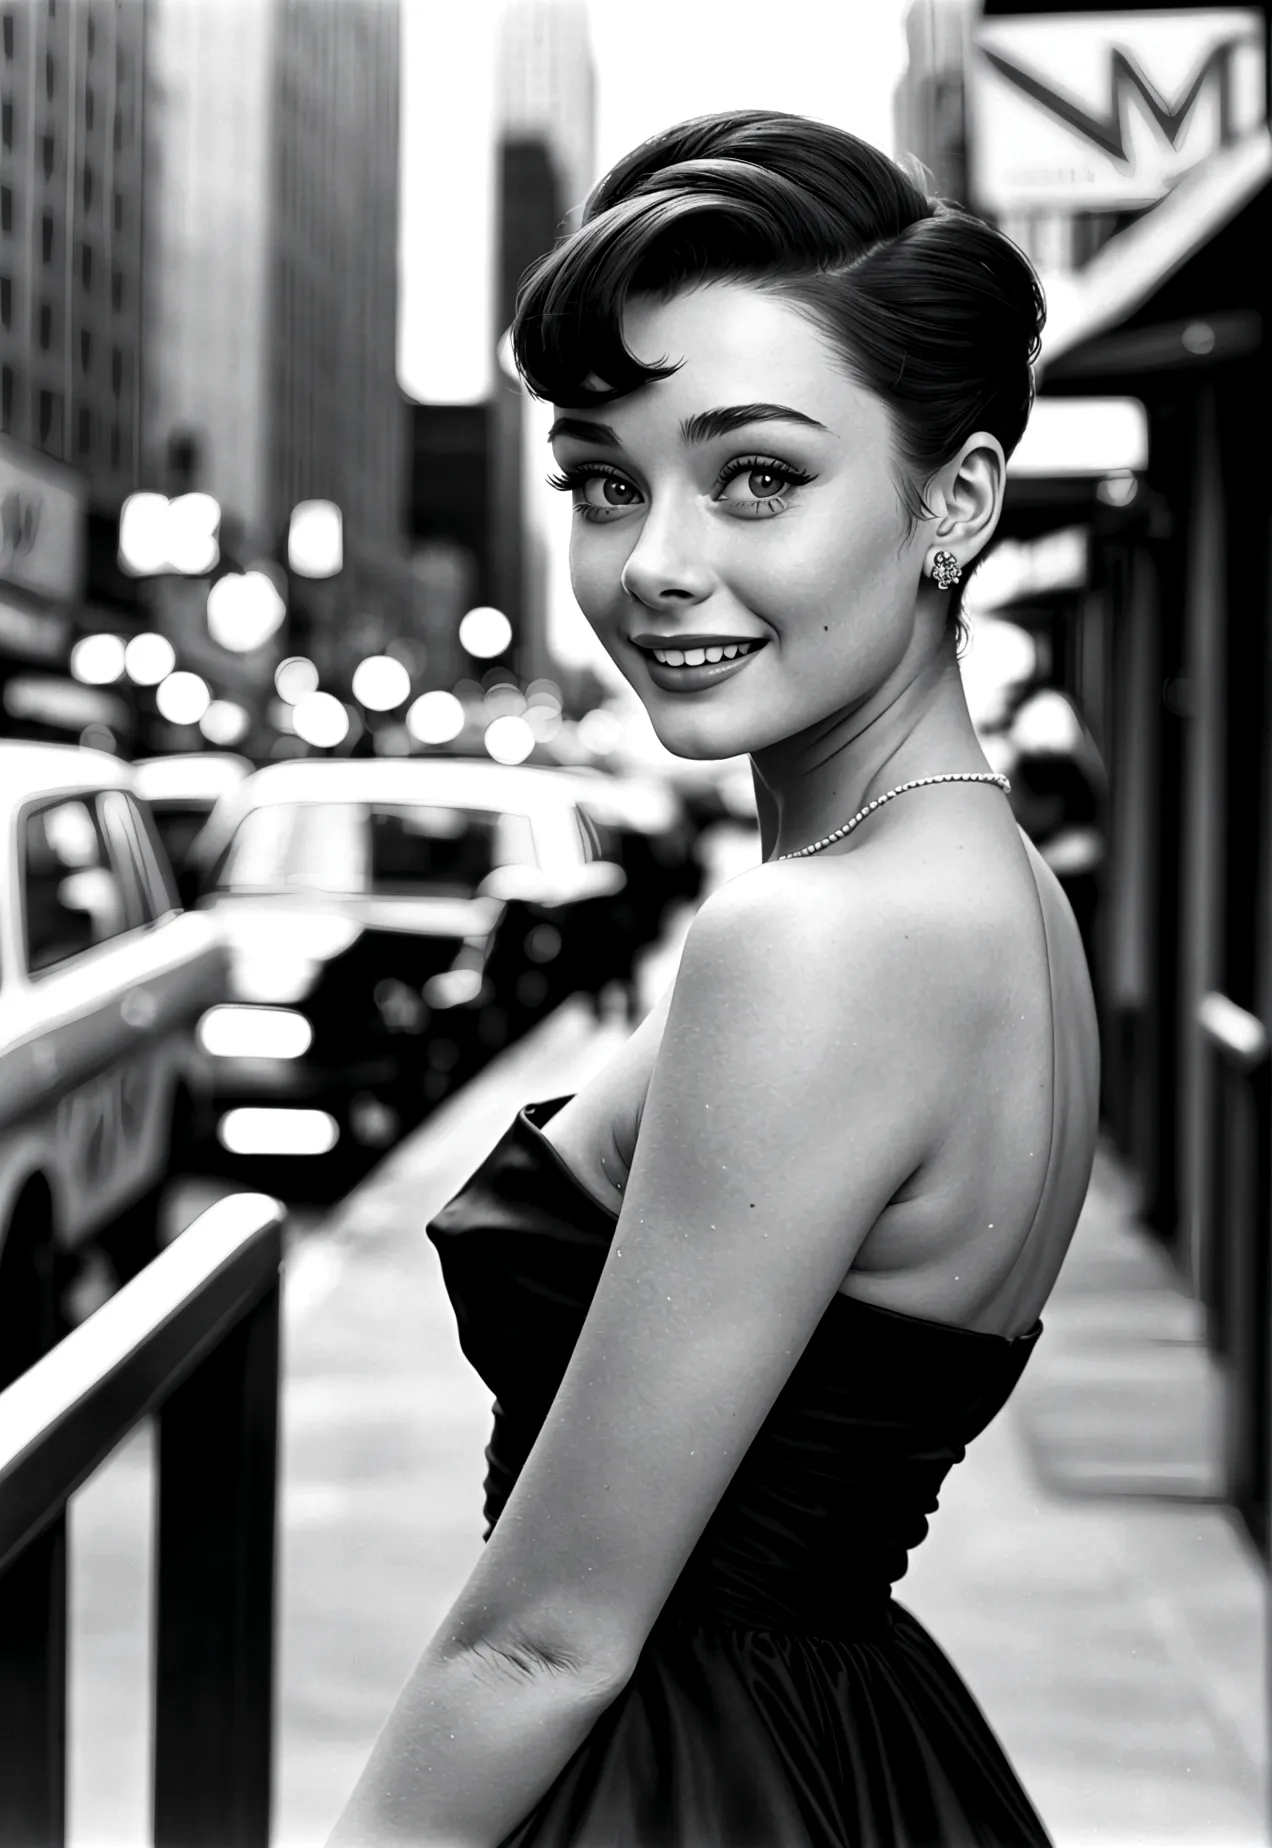 Photograph of a 20-year-old woman who looks like Audrey Hepburn: pelo corto y oscuro, ojos grandes y expresivos y una sonrisa el...